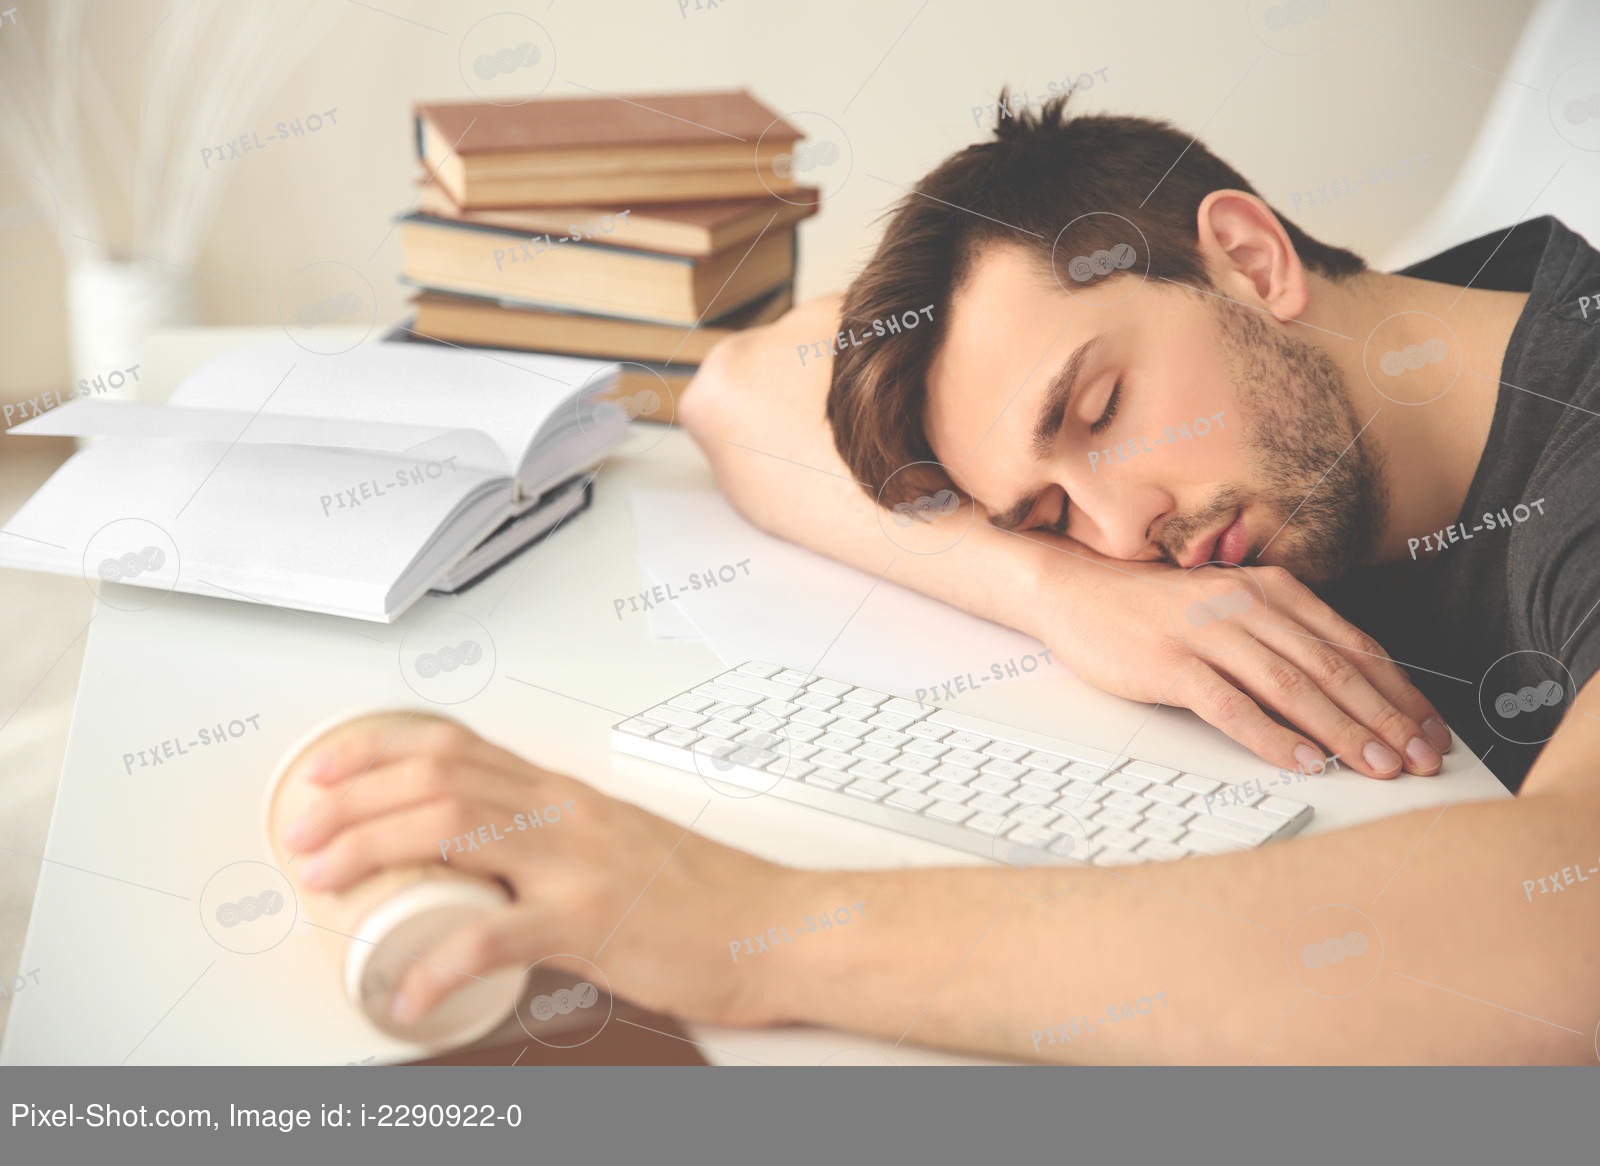 Читать лежа вредно лежа на горячем песке. Чтение лежа. Засыпает за чтением. Сонливость пост. Синдром хронической усталости фото.